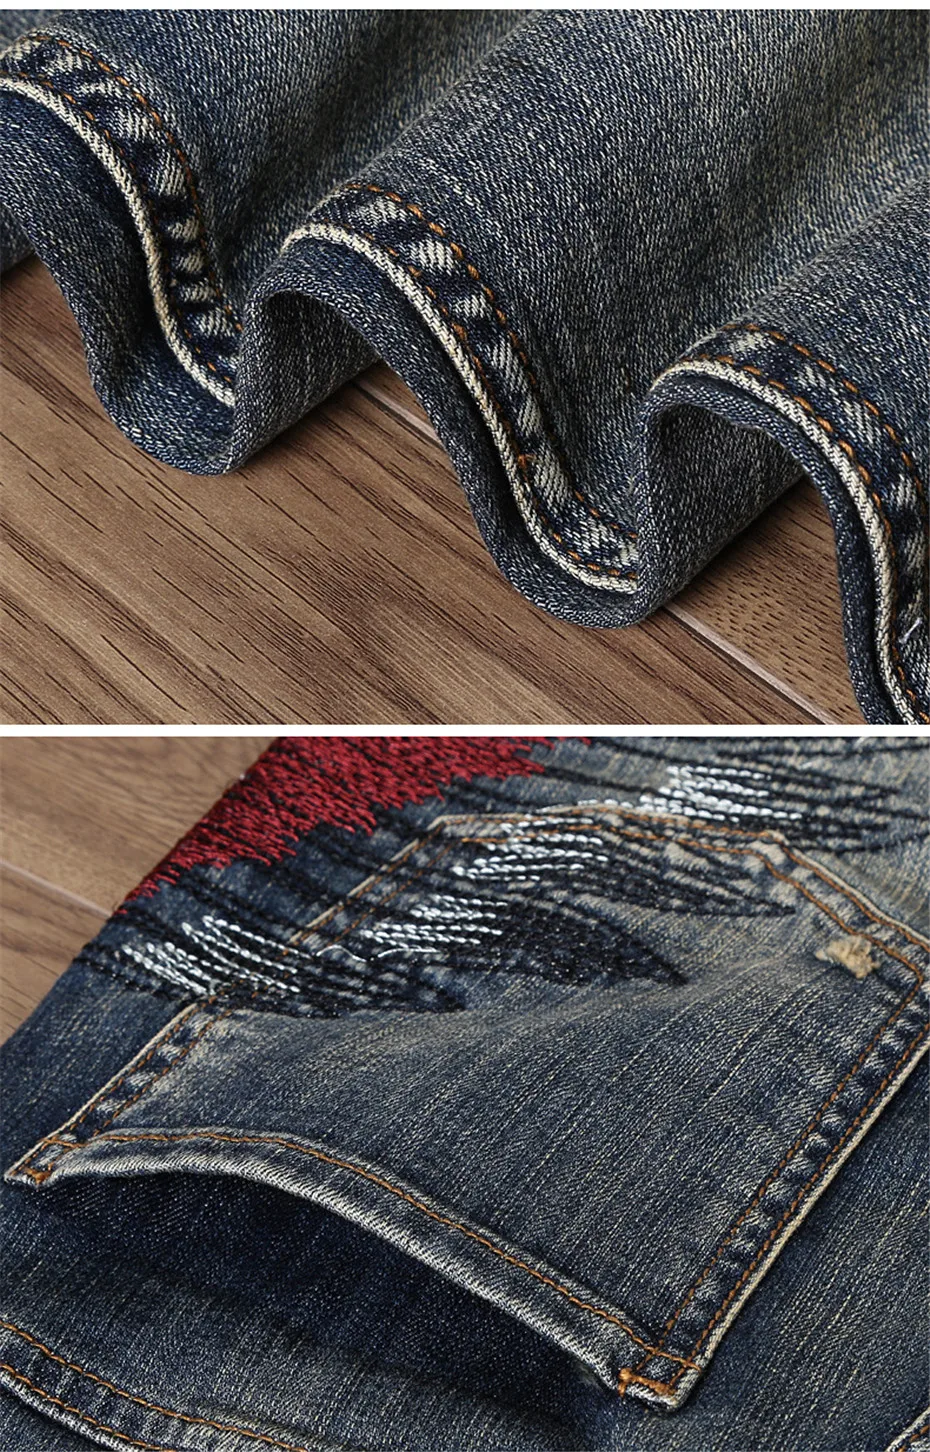 ABOORUN 2018 модные мужские джинсы с вышивкой Винтаж рваные прямые fit джинсовые штаны для мужчин YC1187